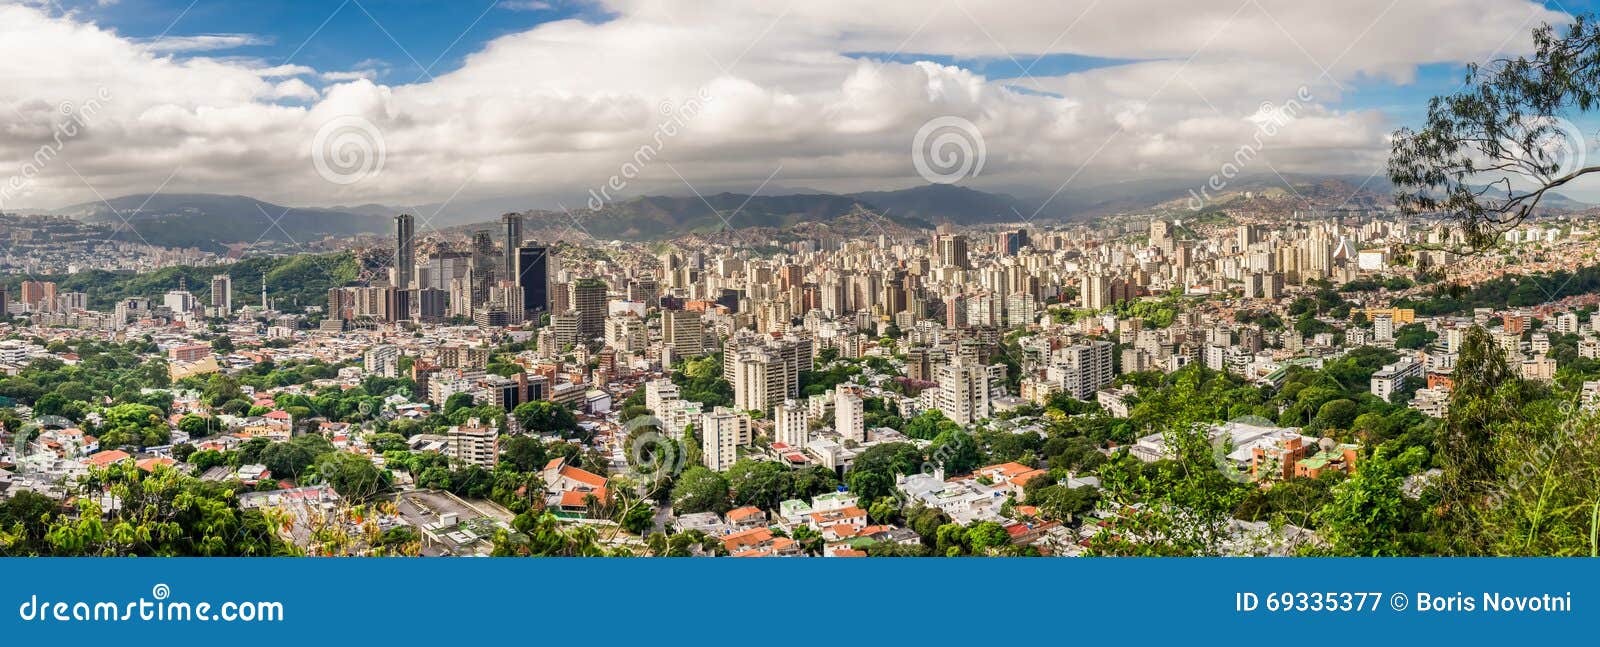 city of caracas, venezuela